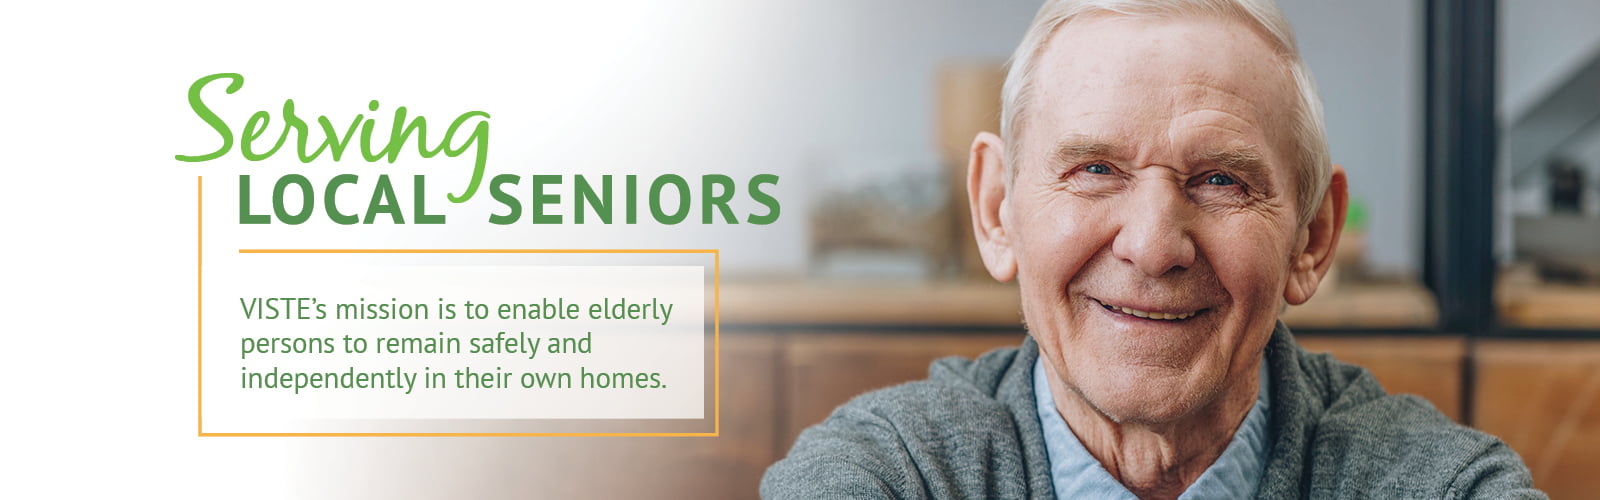 Serving Local Seniors 